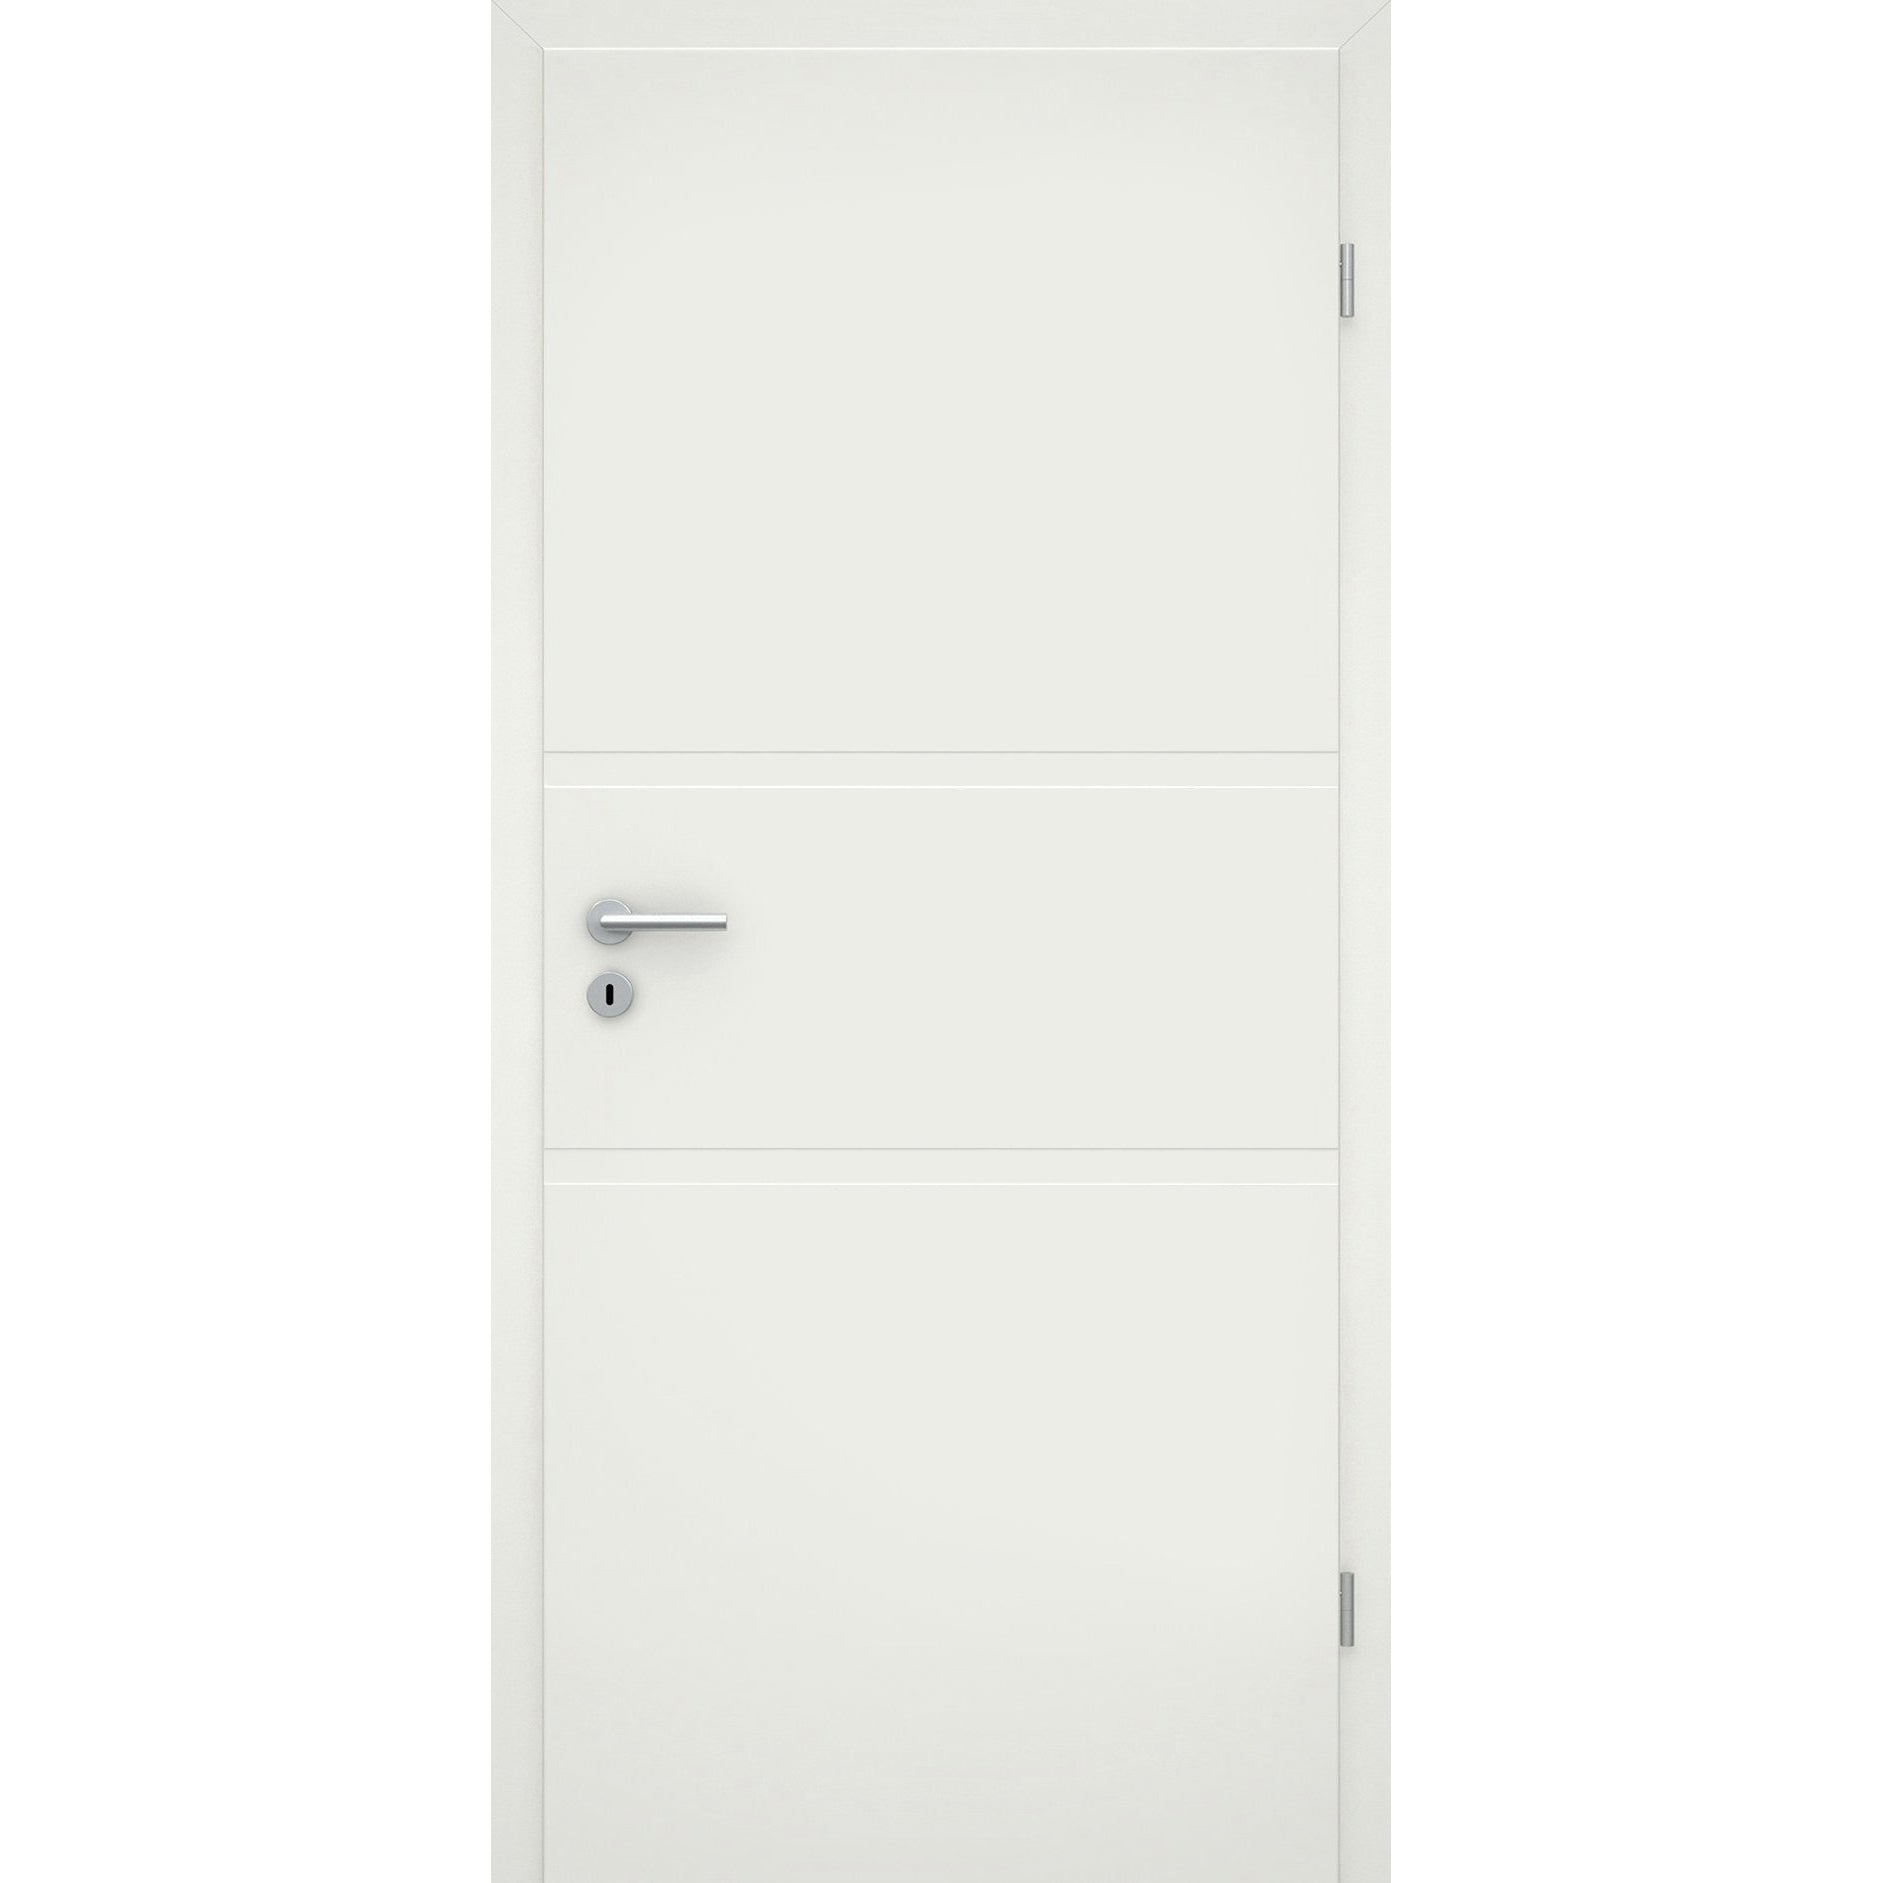 Zimmertür soft-weiß 2 breite Rillen Eckkante - Modell Designtür QB21